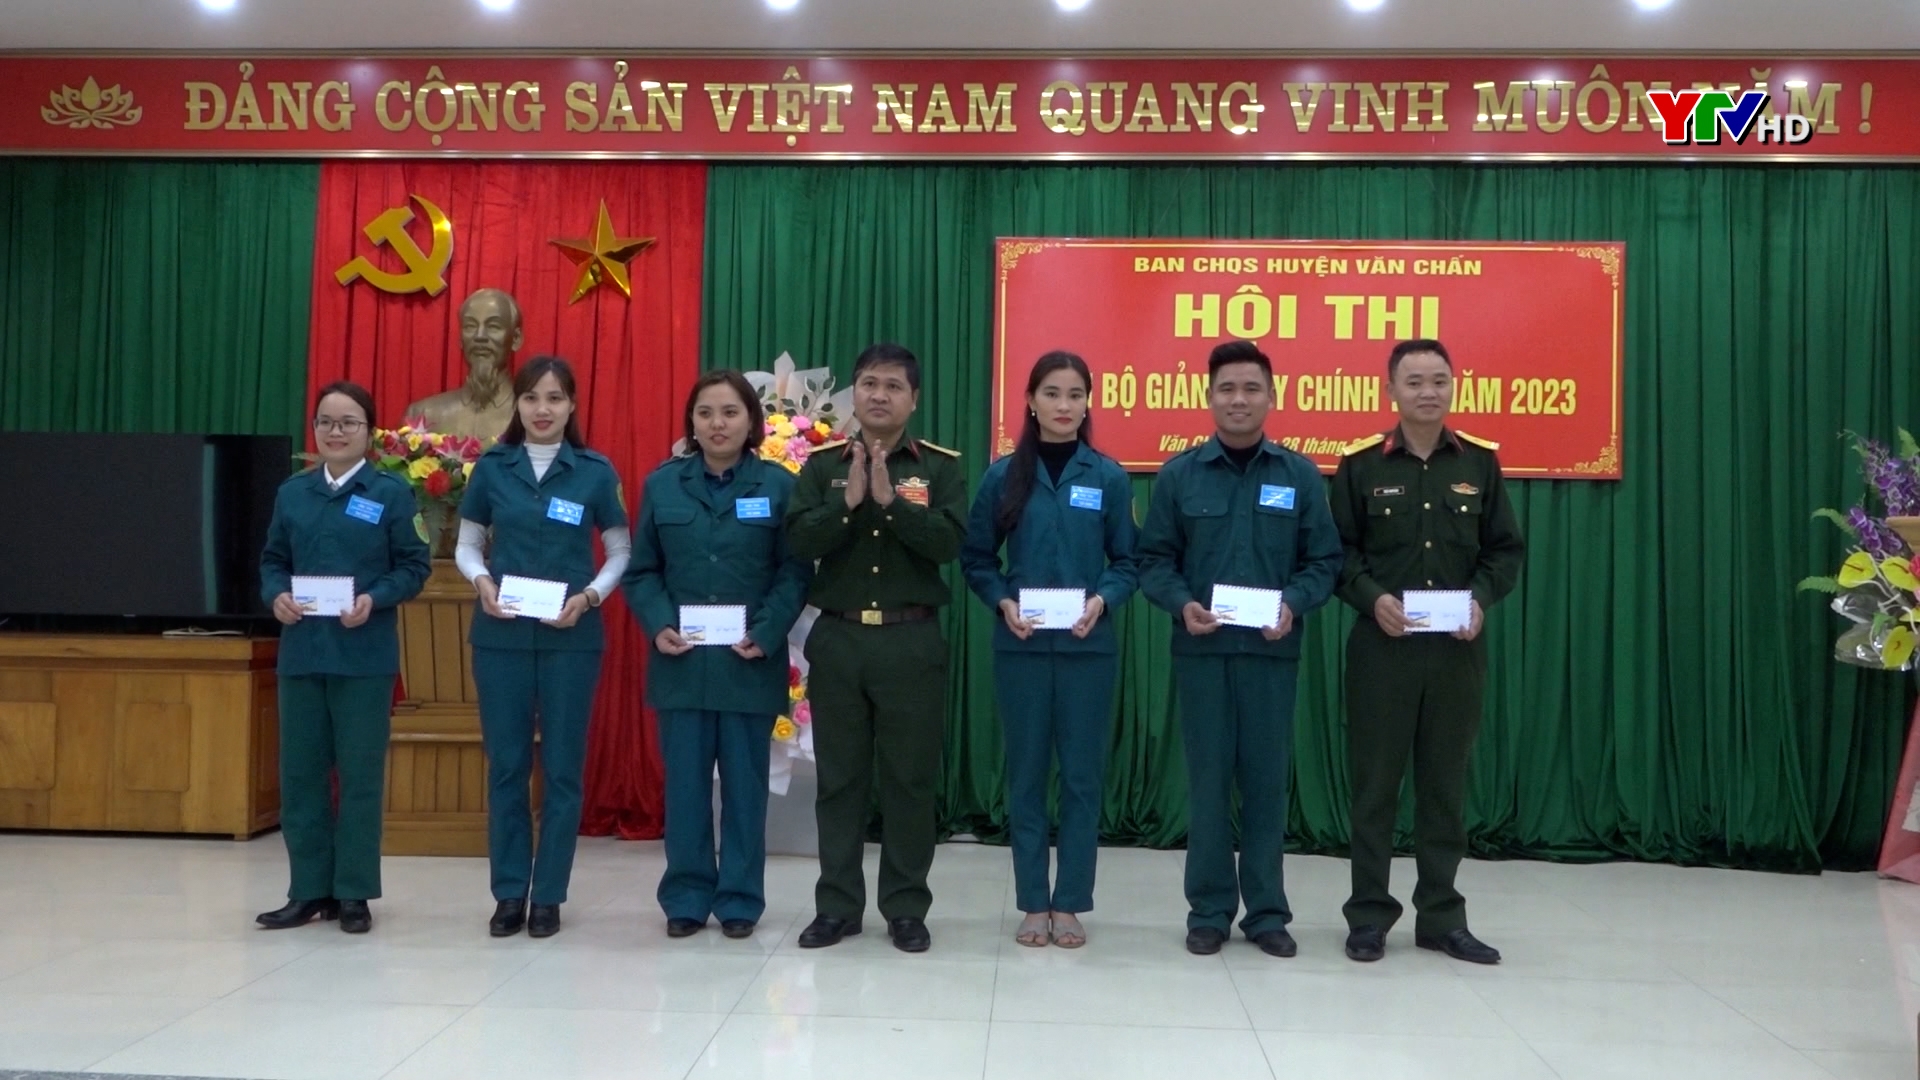 Ban CHQS huyện Văn Chấn tổ chức Hội thi cán bộ giảng dạy chính trị năm 2023